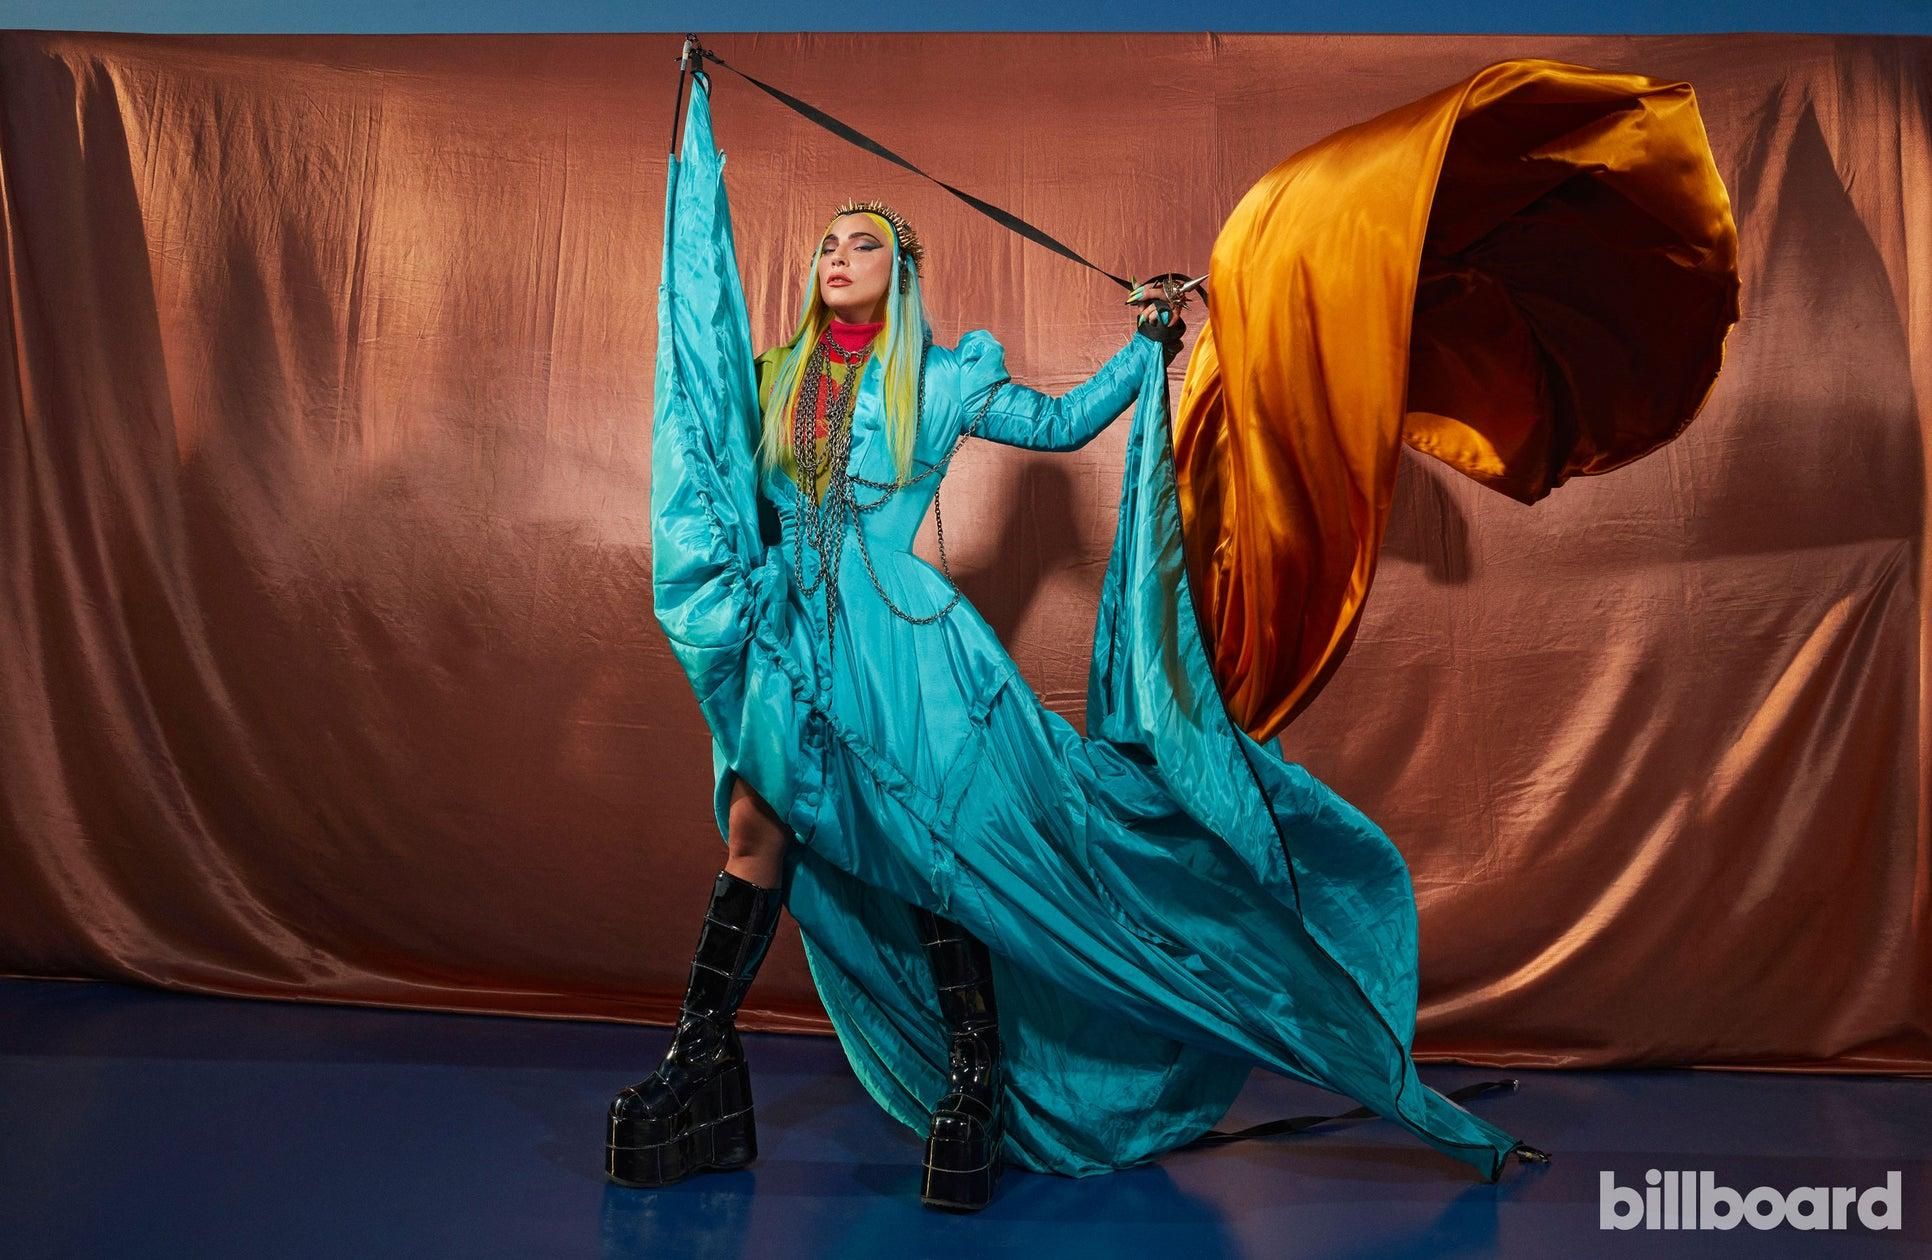 В футуристических образах: Леди Гага стала главной звездой журнала Billboard – яркие фото